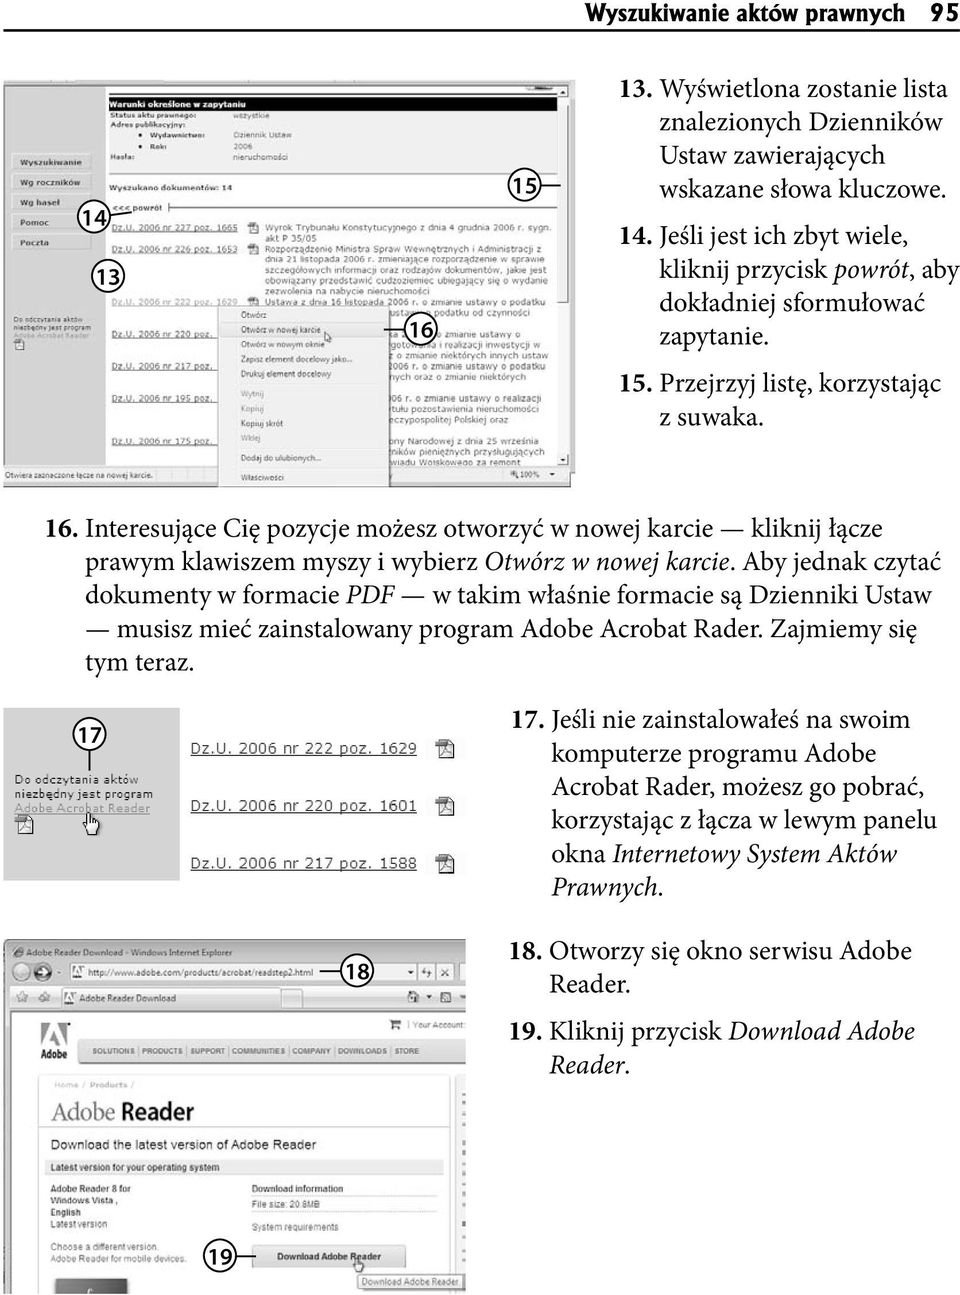 Aby jednak czytać dokumenty w formacie PDF w takim właśnie formacie są Dzienniki Ustaw musisz mieć zainstalowany program Adobe Acrobat Rader. Zajmiemy się tym teraz. 17 17.